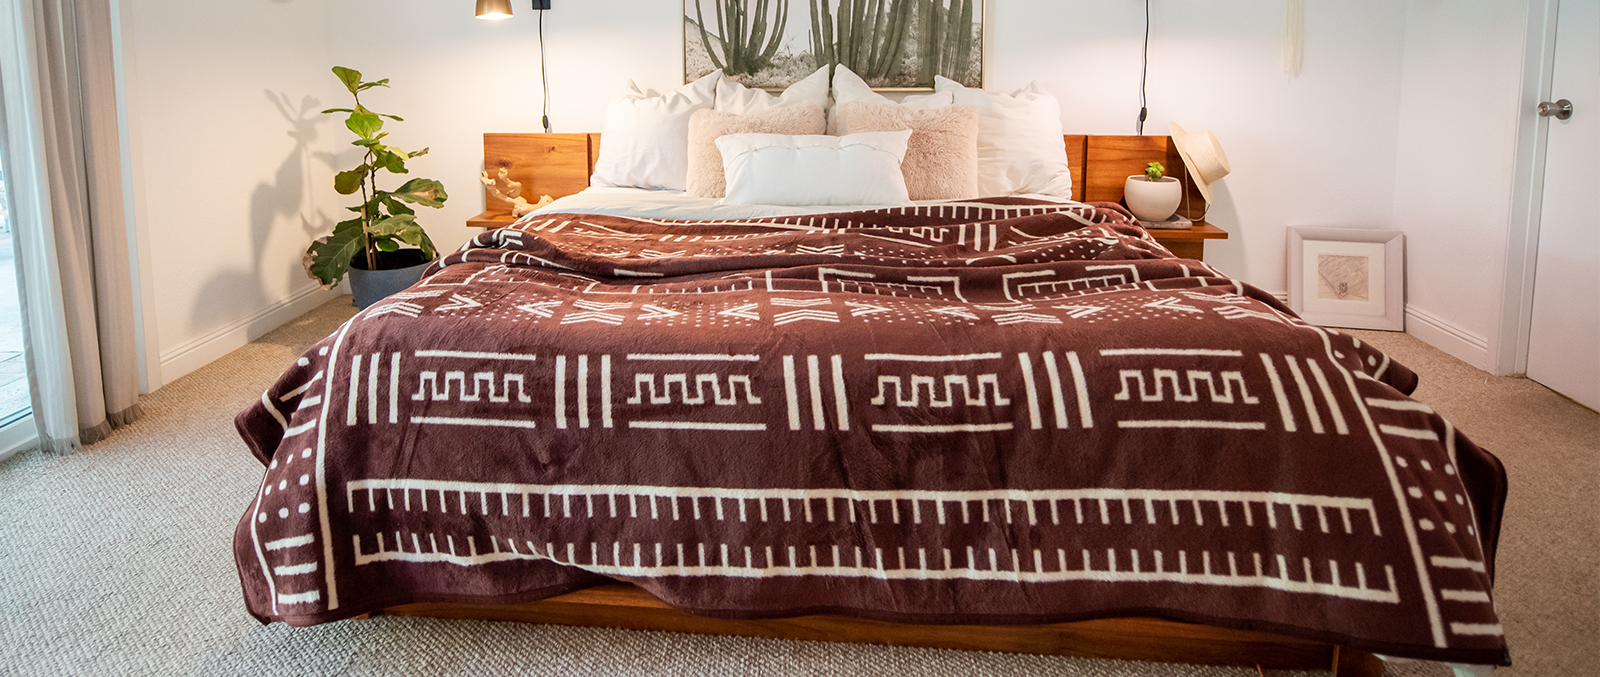 king size brown basotho blanket on king size bed